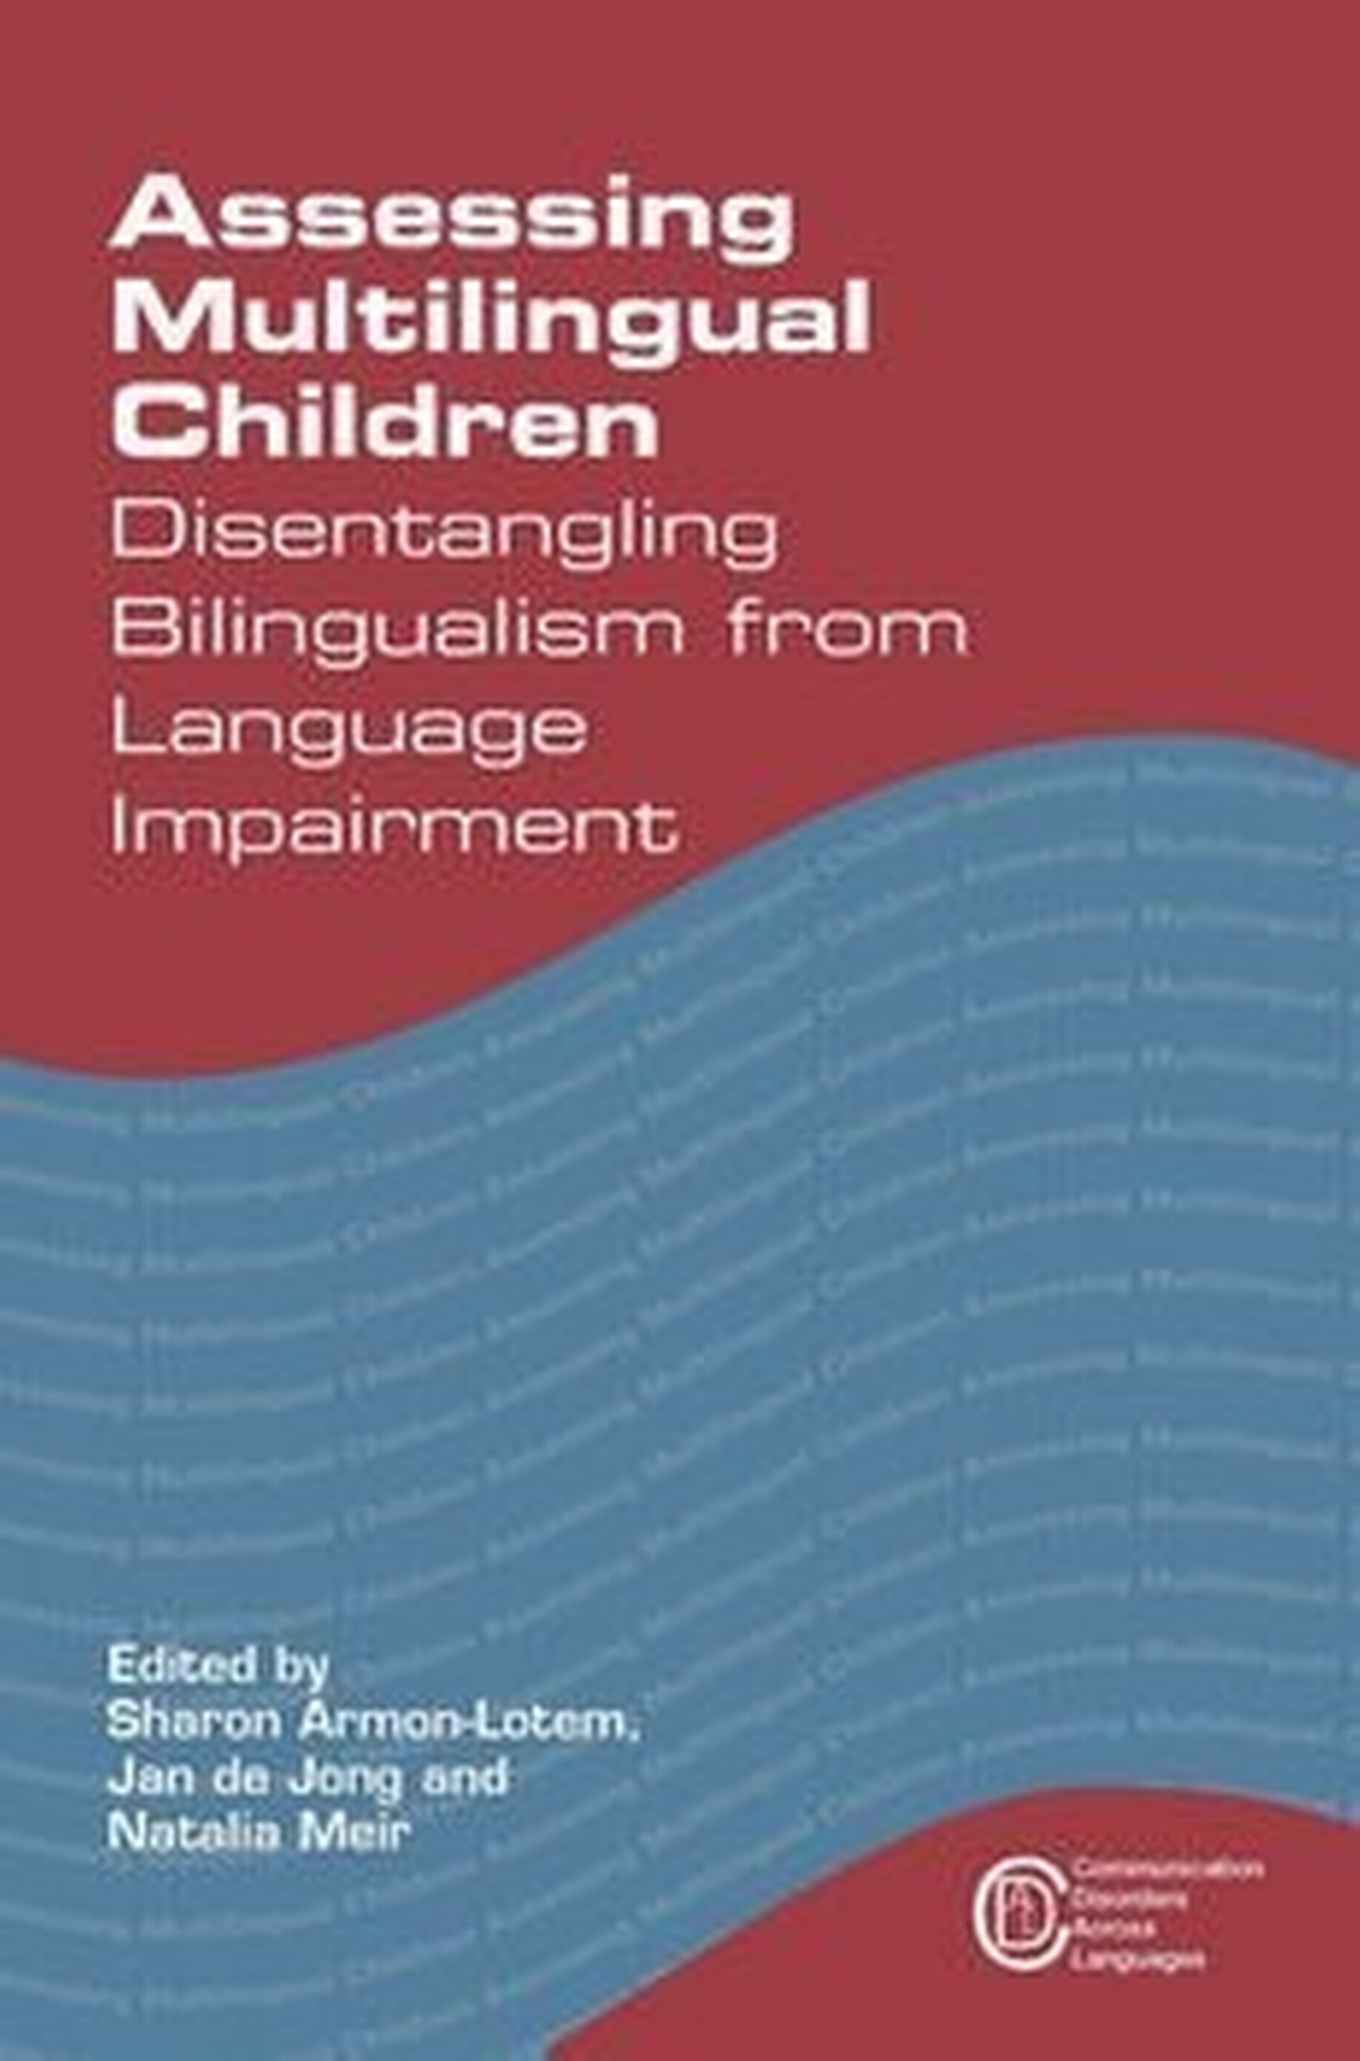 Assessing Multilingual Children | Sharon Armon-Lotem, Natalia Meir, Jan de Jong